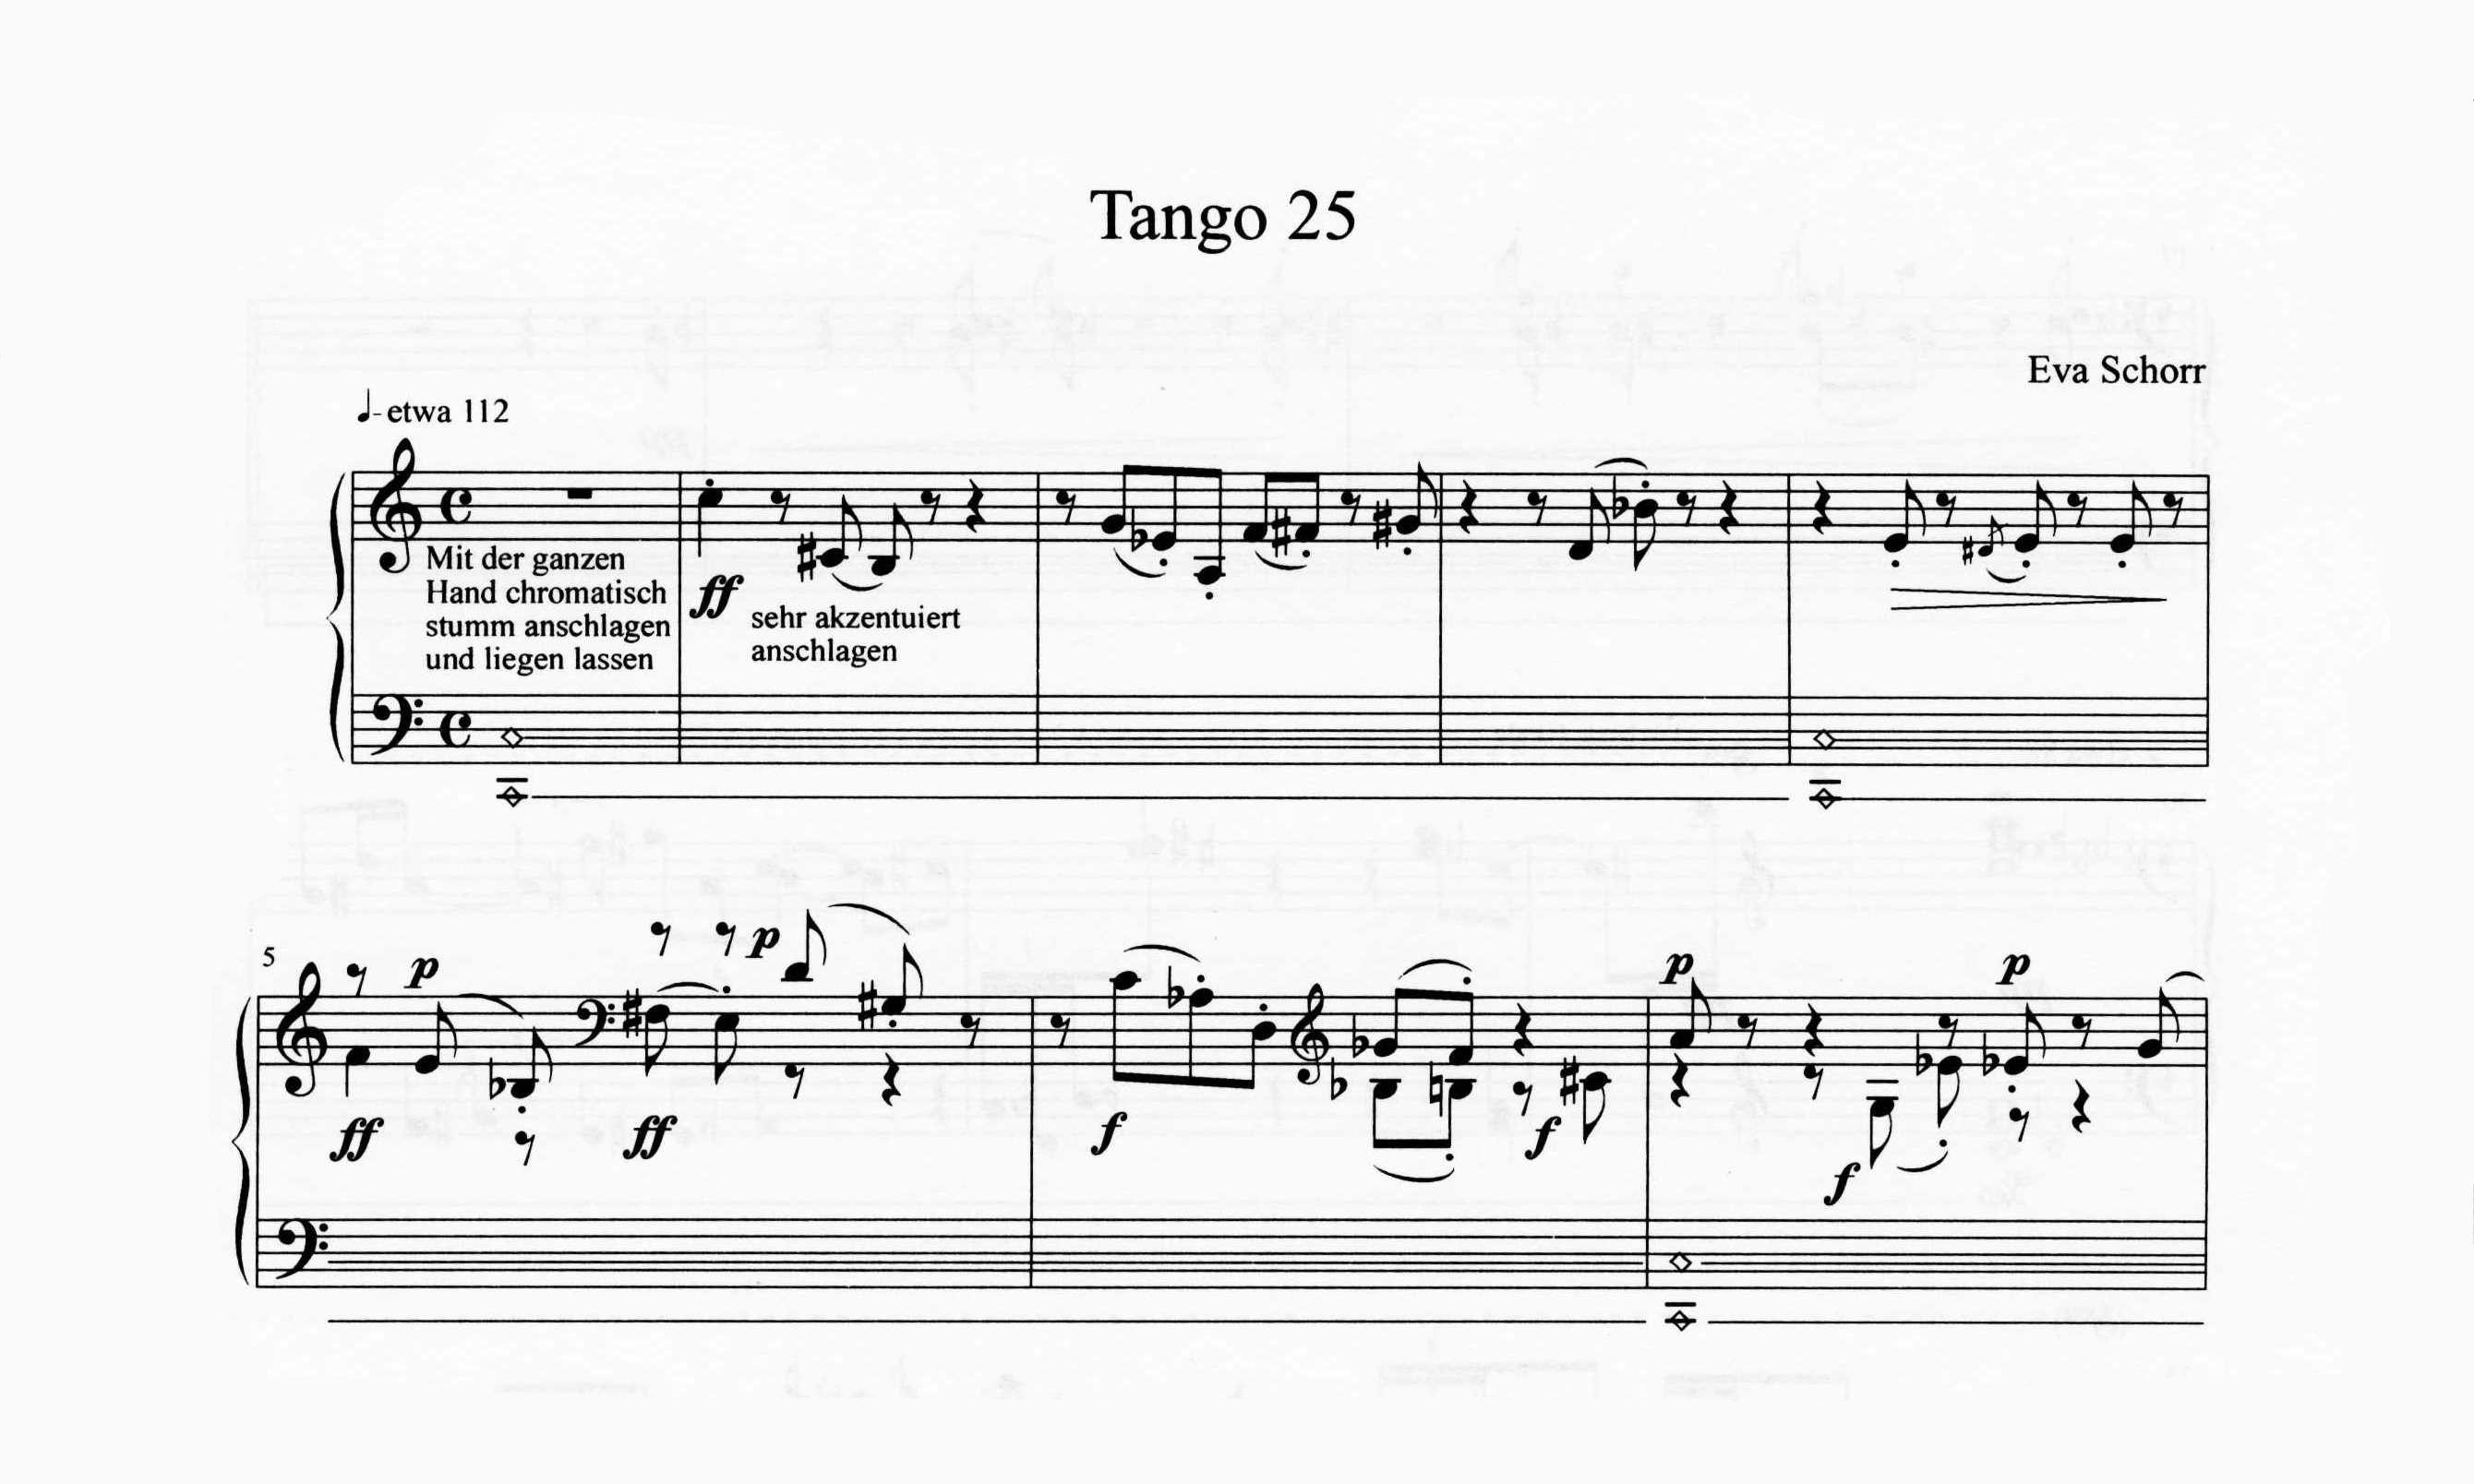 Schorr, Eva - Tango 25